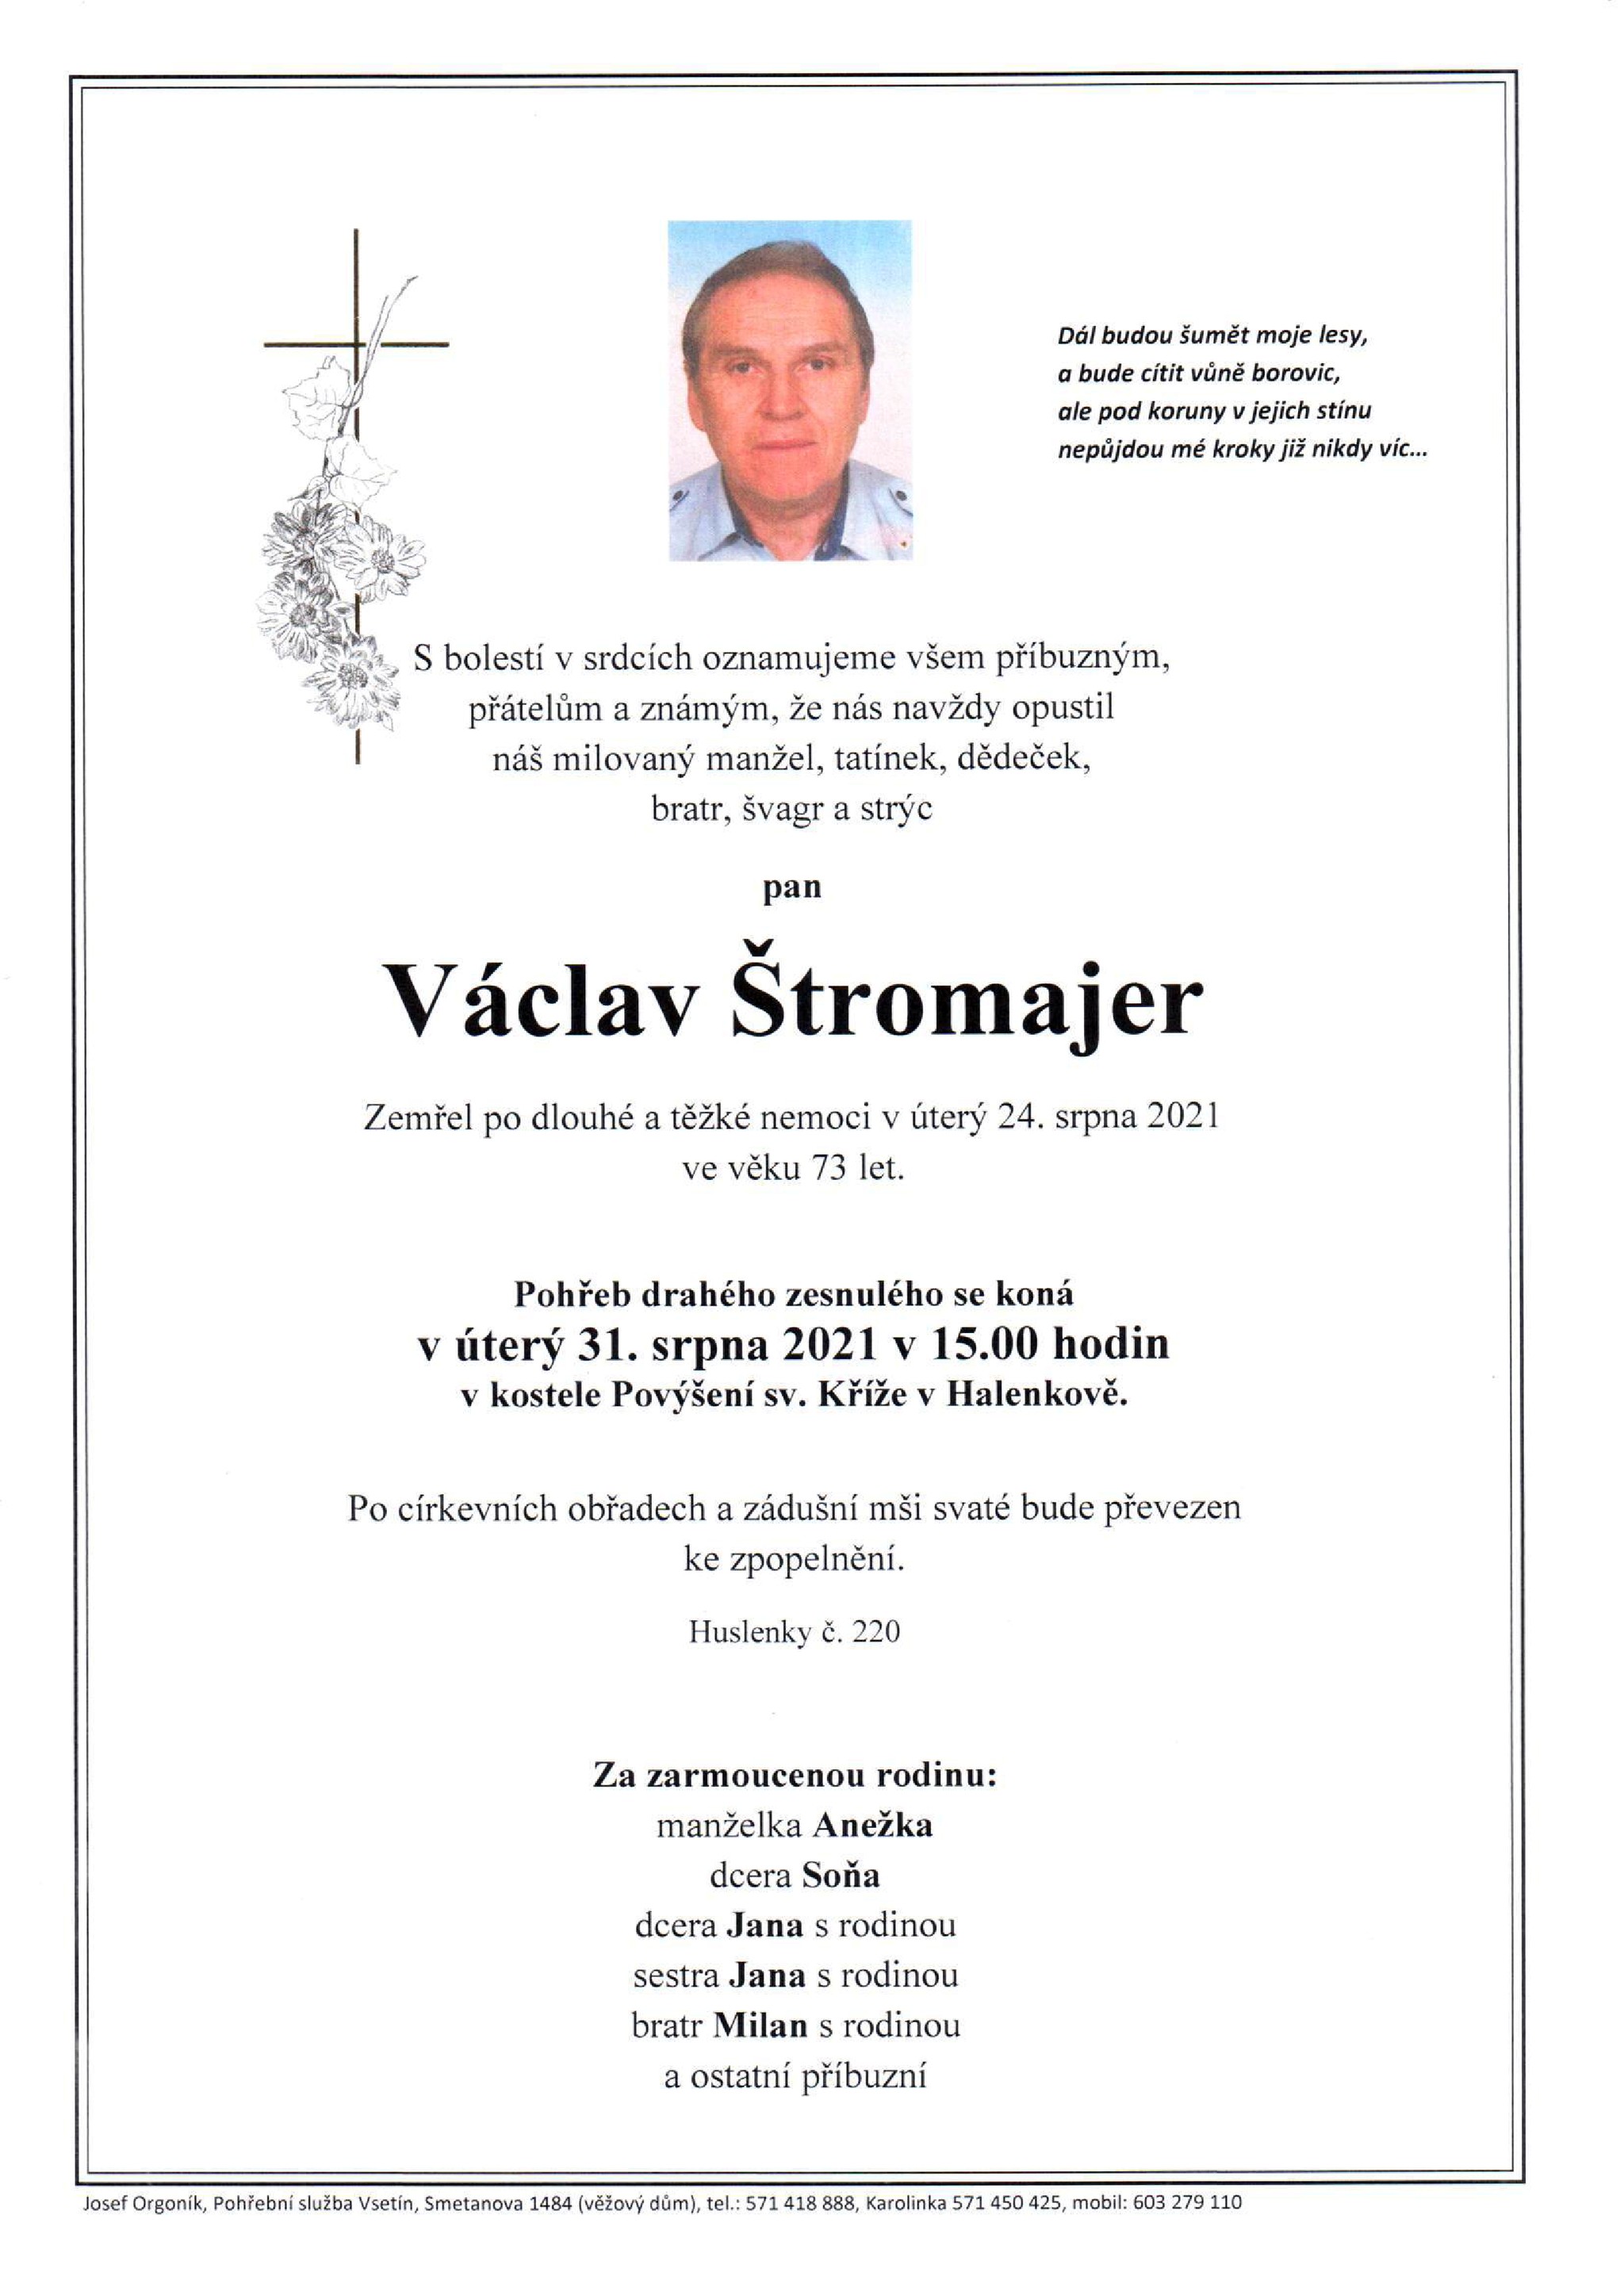 Václav Štromajer